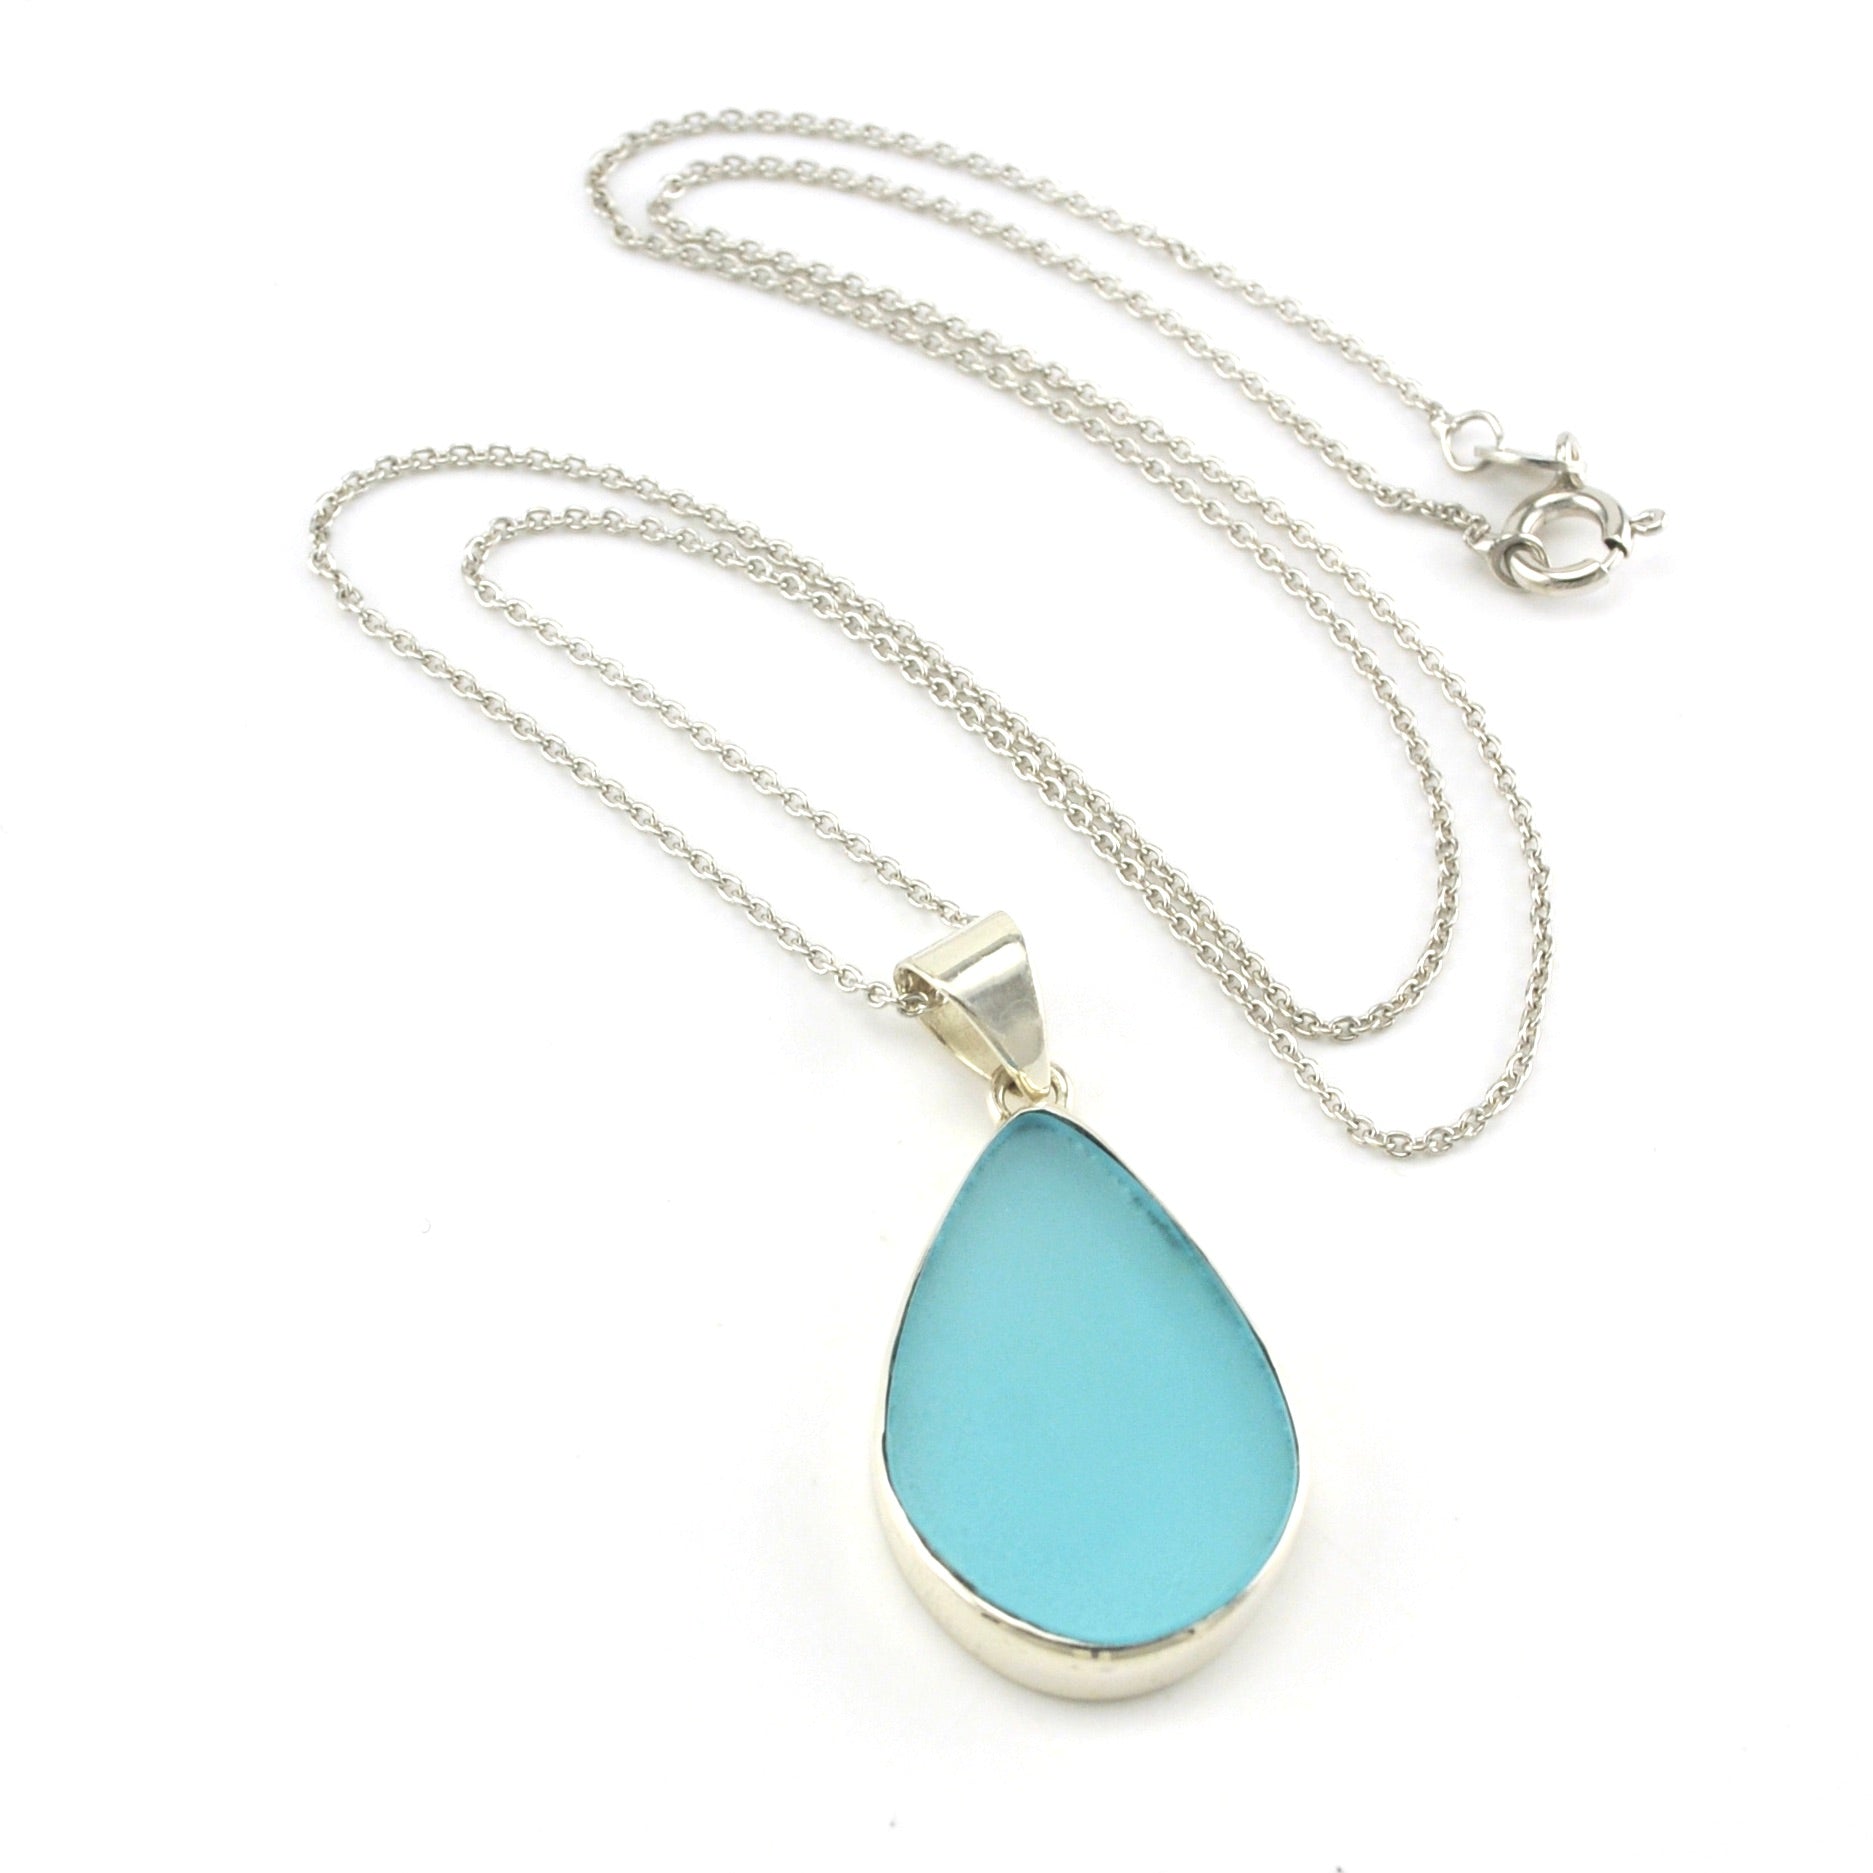 Sterling Silver Aqua Sea Glass Necklace